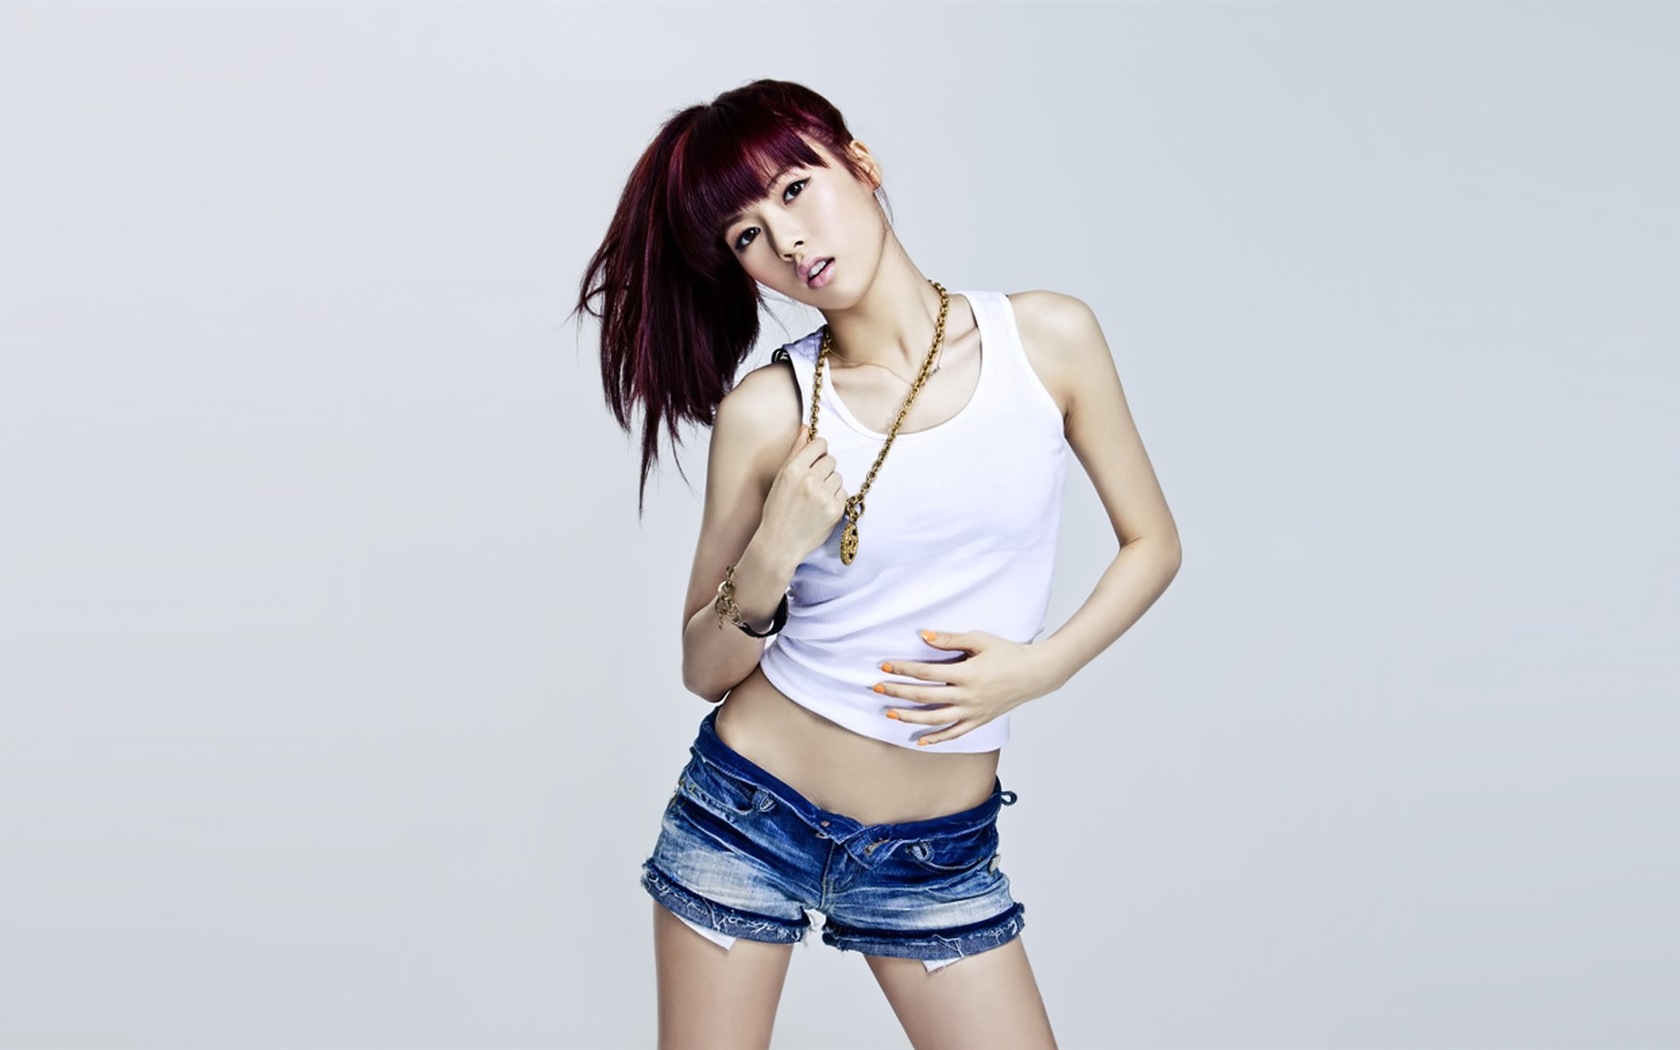 4Minute Musique coréenne belle combinaison Girls Wallpapers HD #11 - 1680x1050